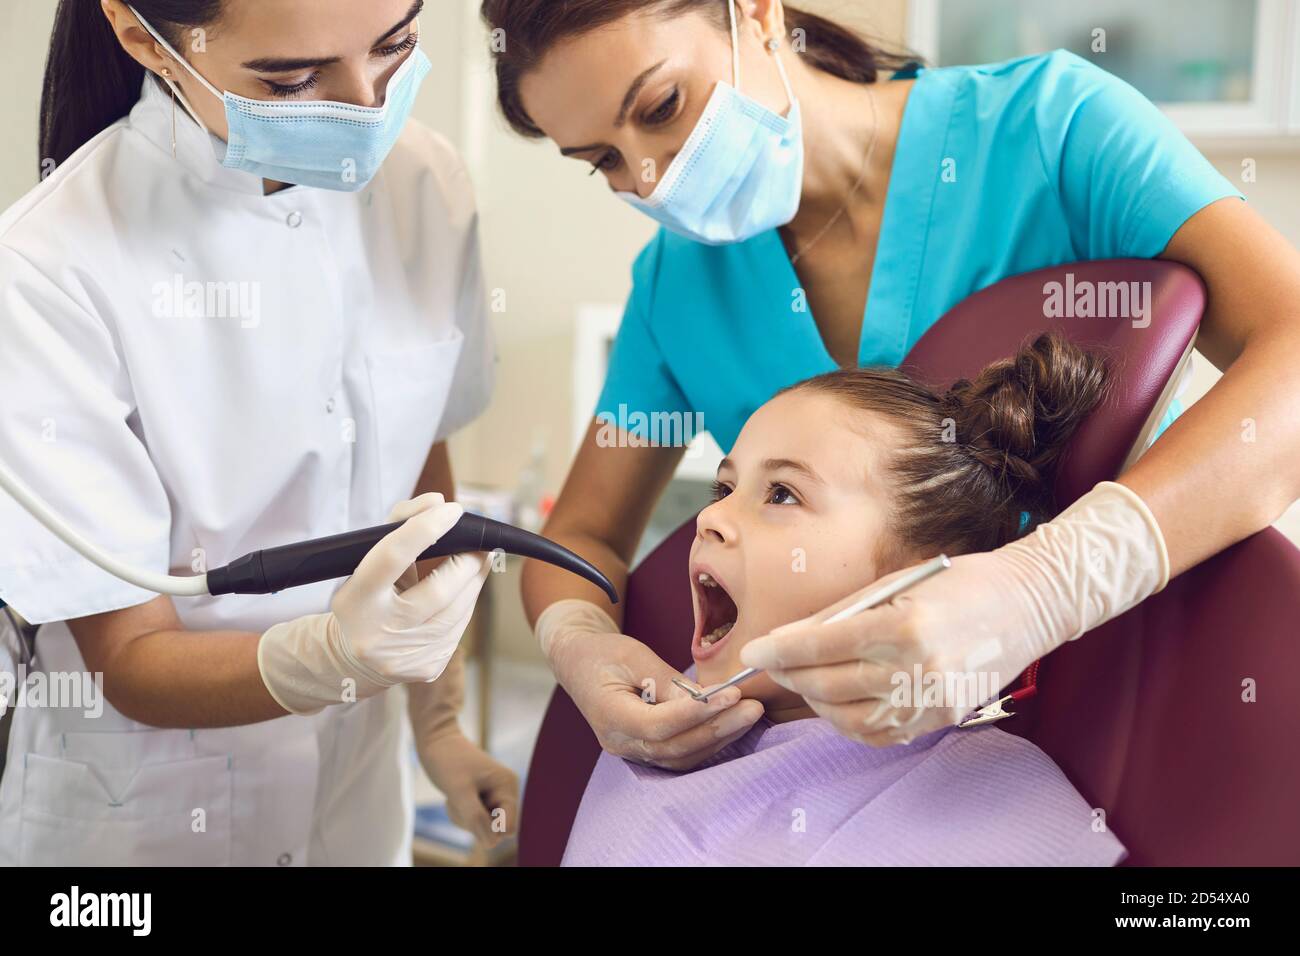 Enregistrement d'une fille dans un cabinet de dentiste. Prévention des caries et traitement dentaire. Banque D'Images